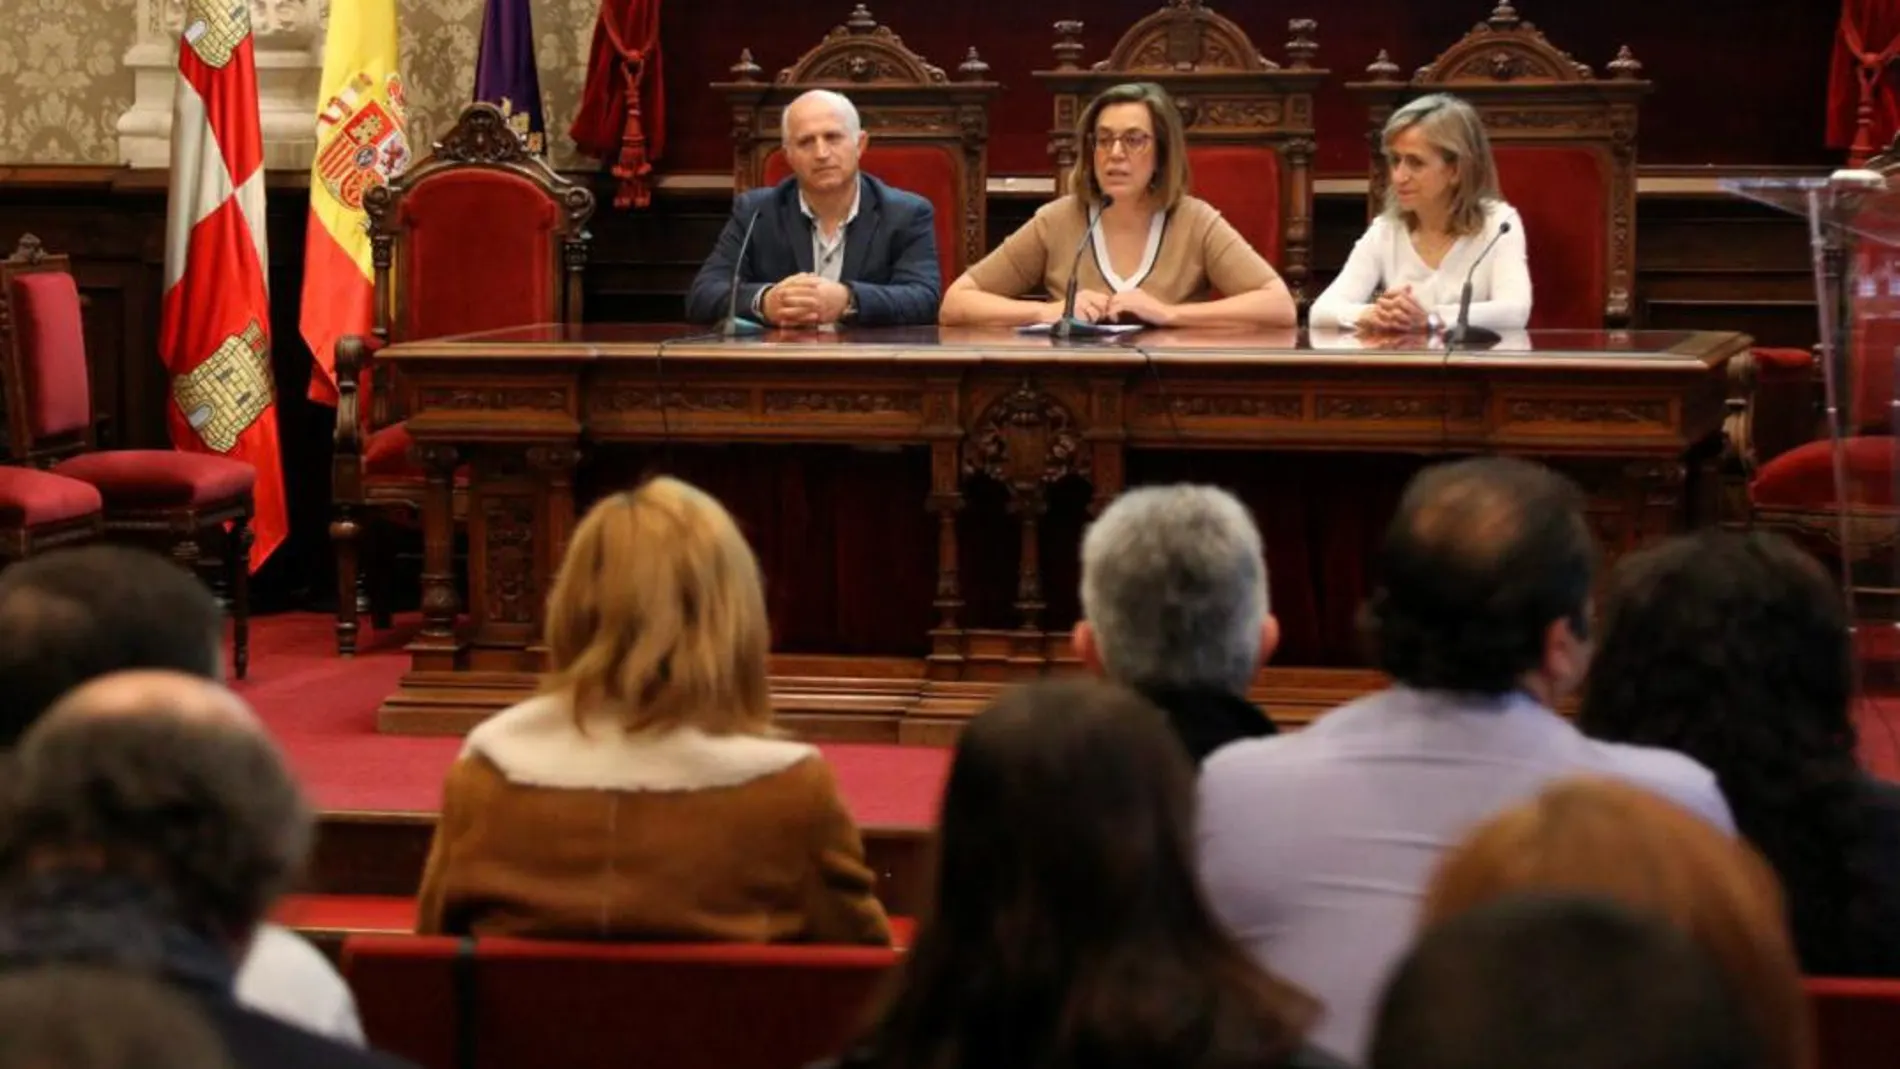 La presidenta de la Diputación de Palencia, Ángeles Armisén, presenta esta nueva guía junto a los diputados provinciales María José de la Fuente y Urbano Alonso